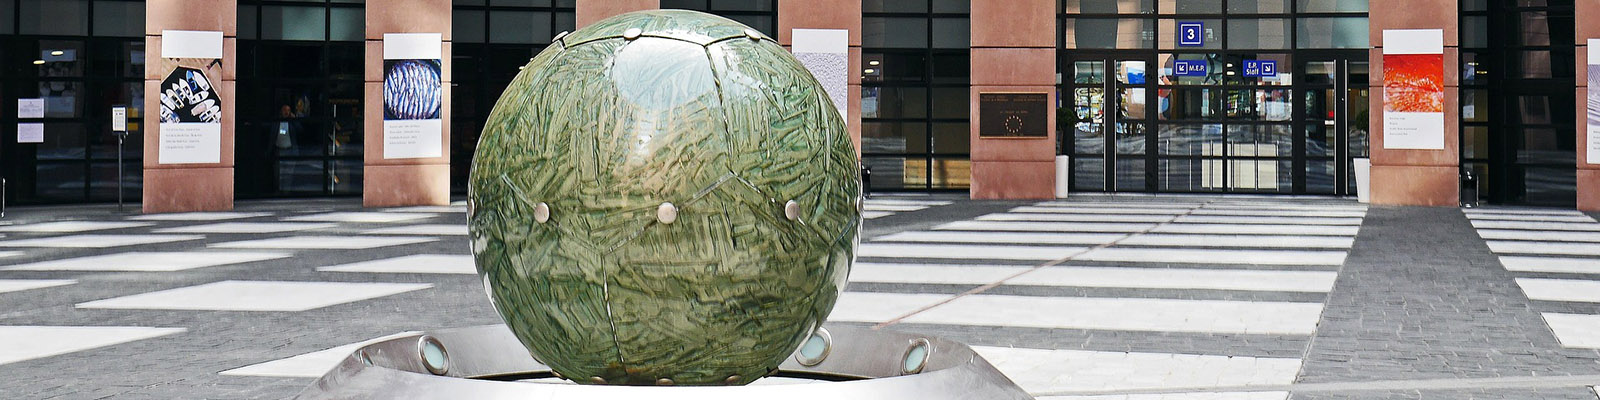 Green globe sculpture at EU Parliament